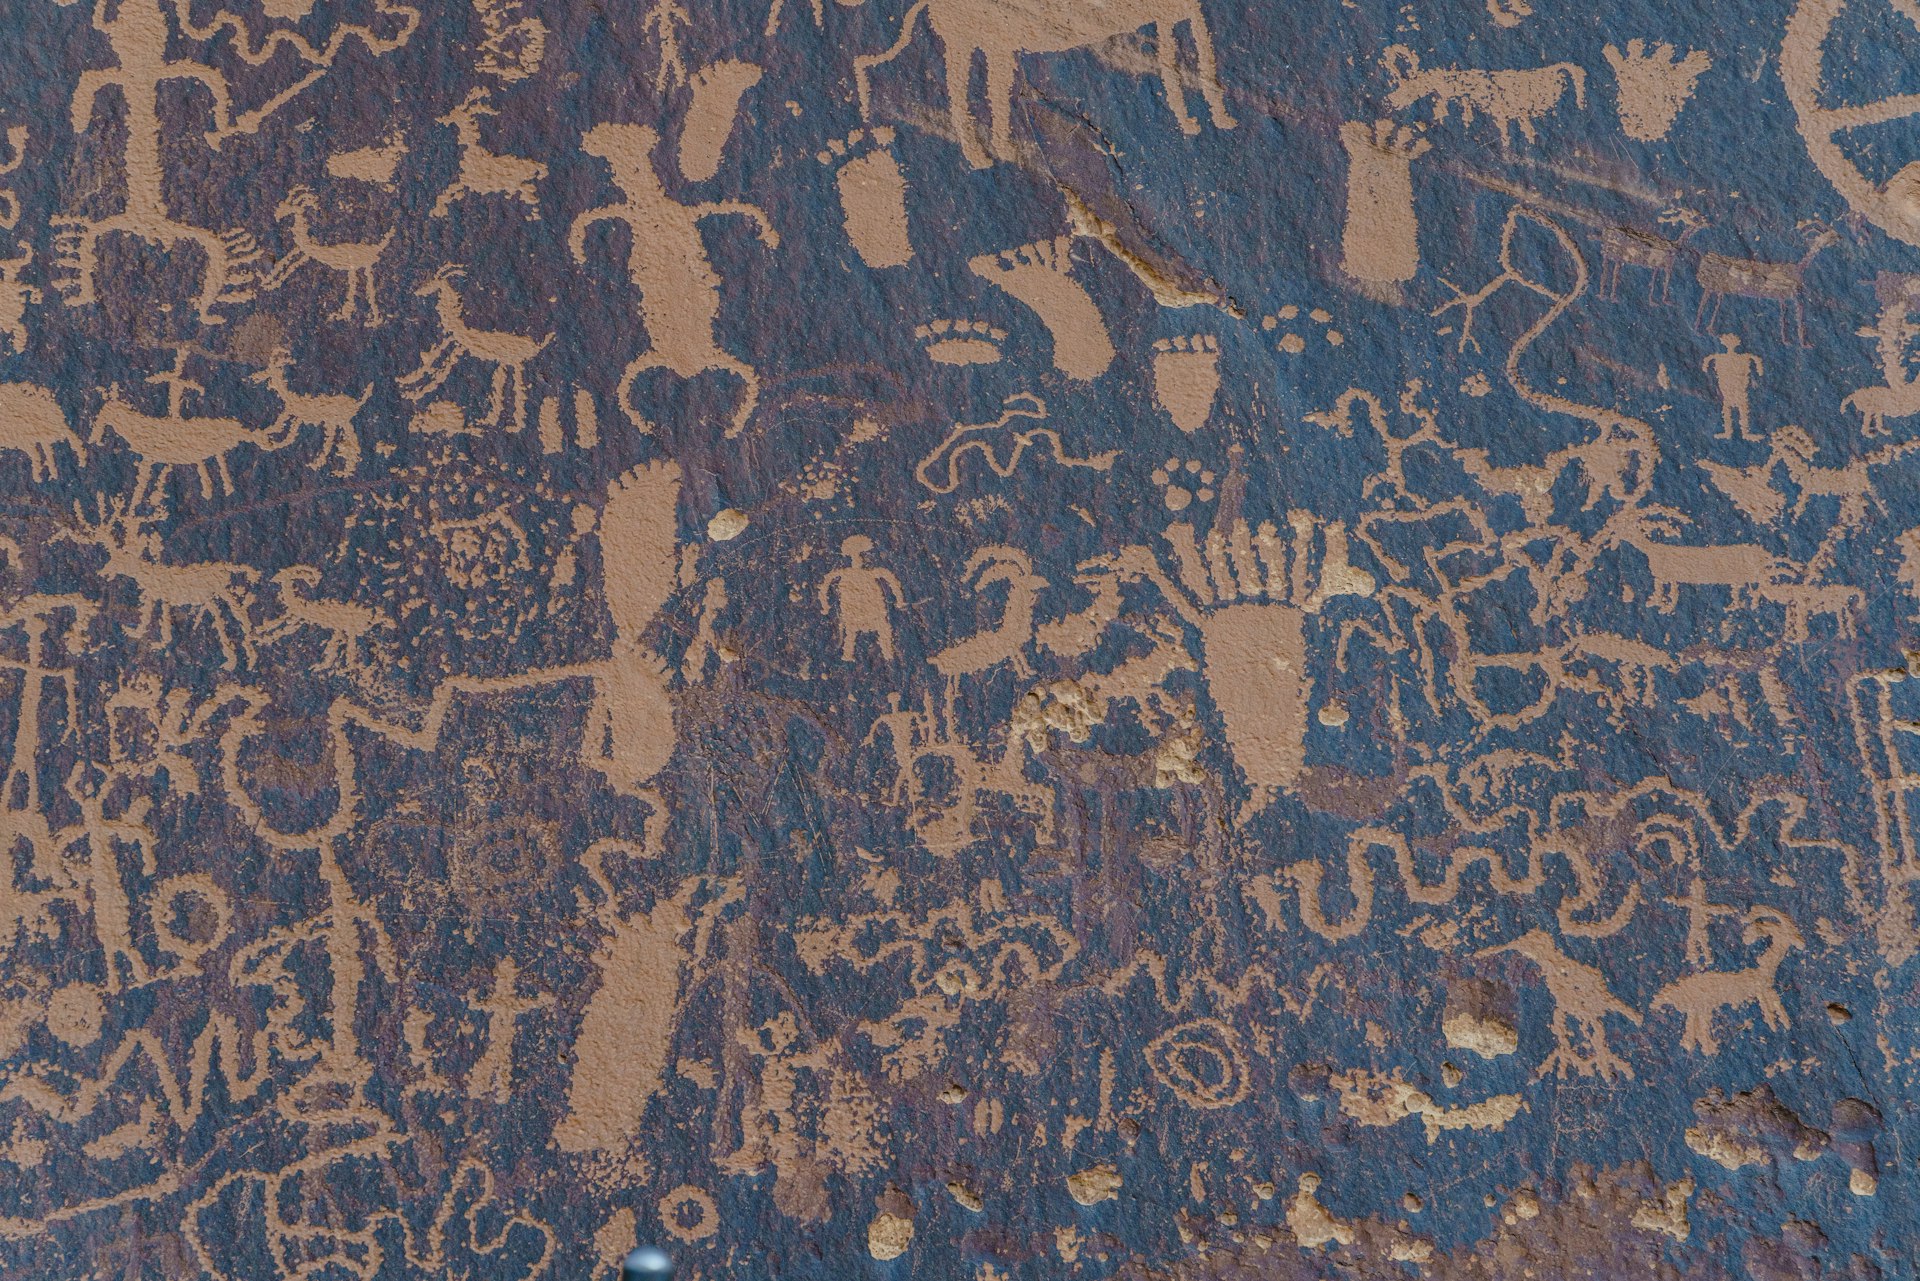 Ancient Hopi petroglyphs in Arizona, USA